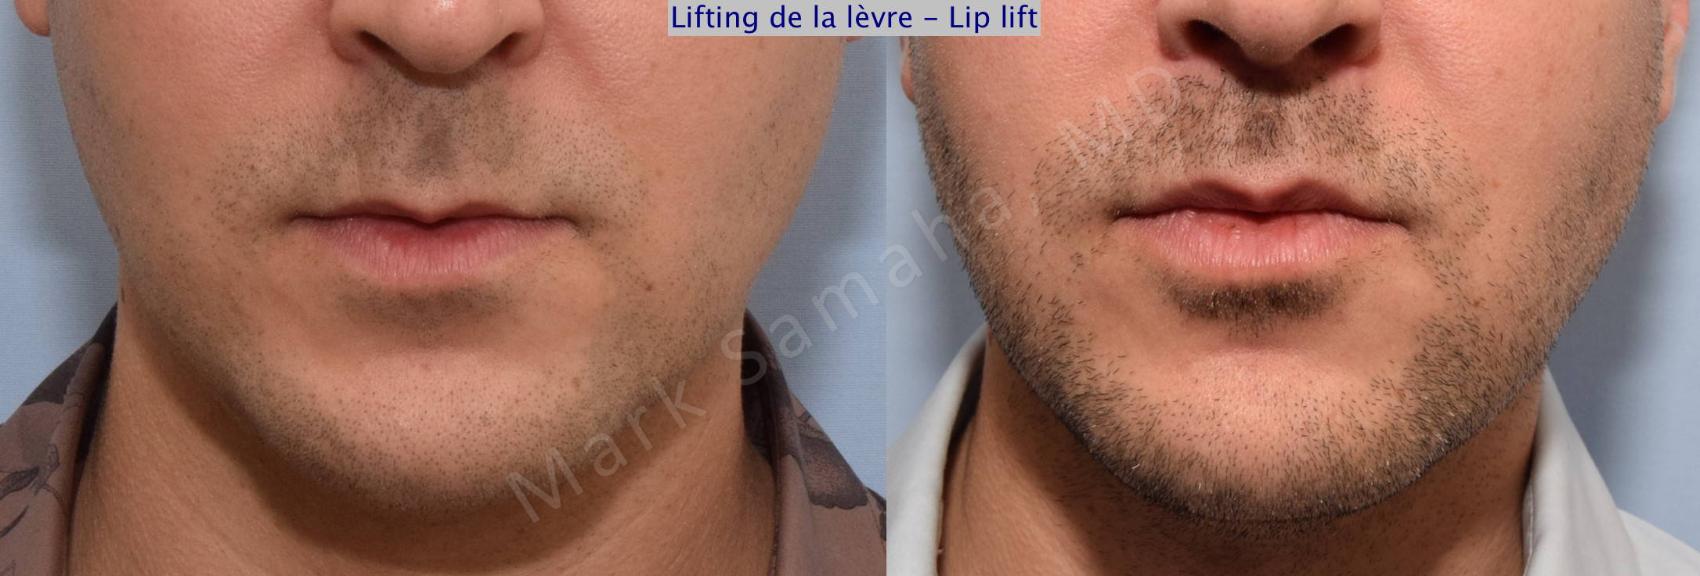 Before & After Lifting de la lèvre supérieure / Lip Lift  Case 72 View #1 View in Mount Royal, QC